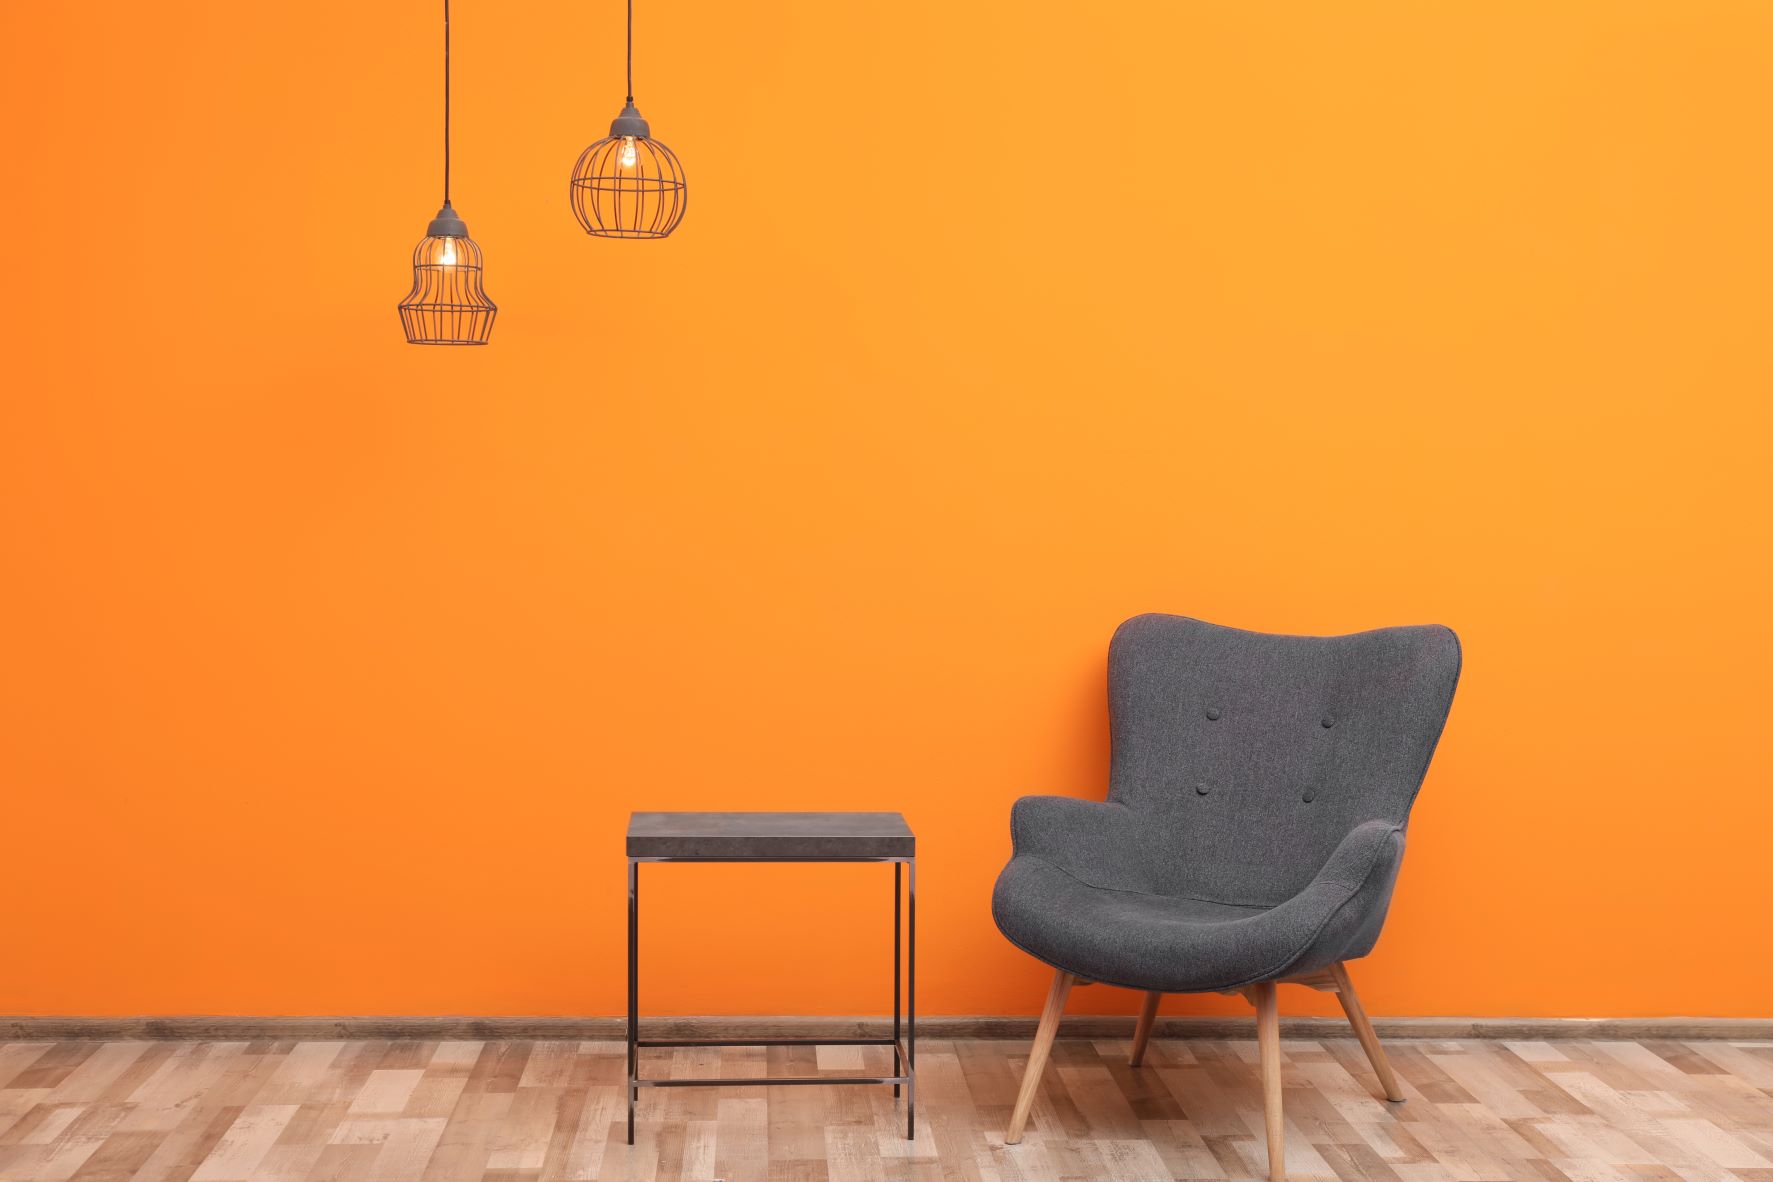 bequemer Sessel und kleines Tischchen vor einer orangen Wand